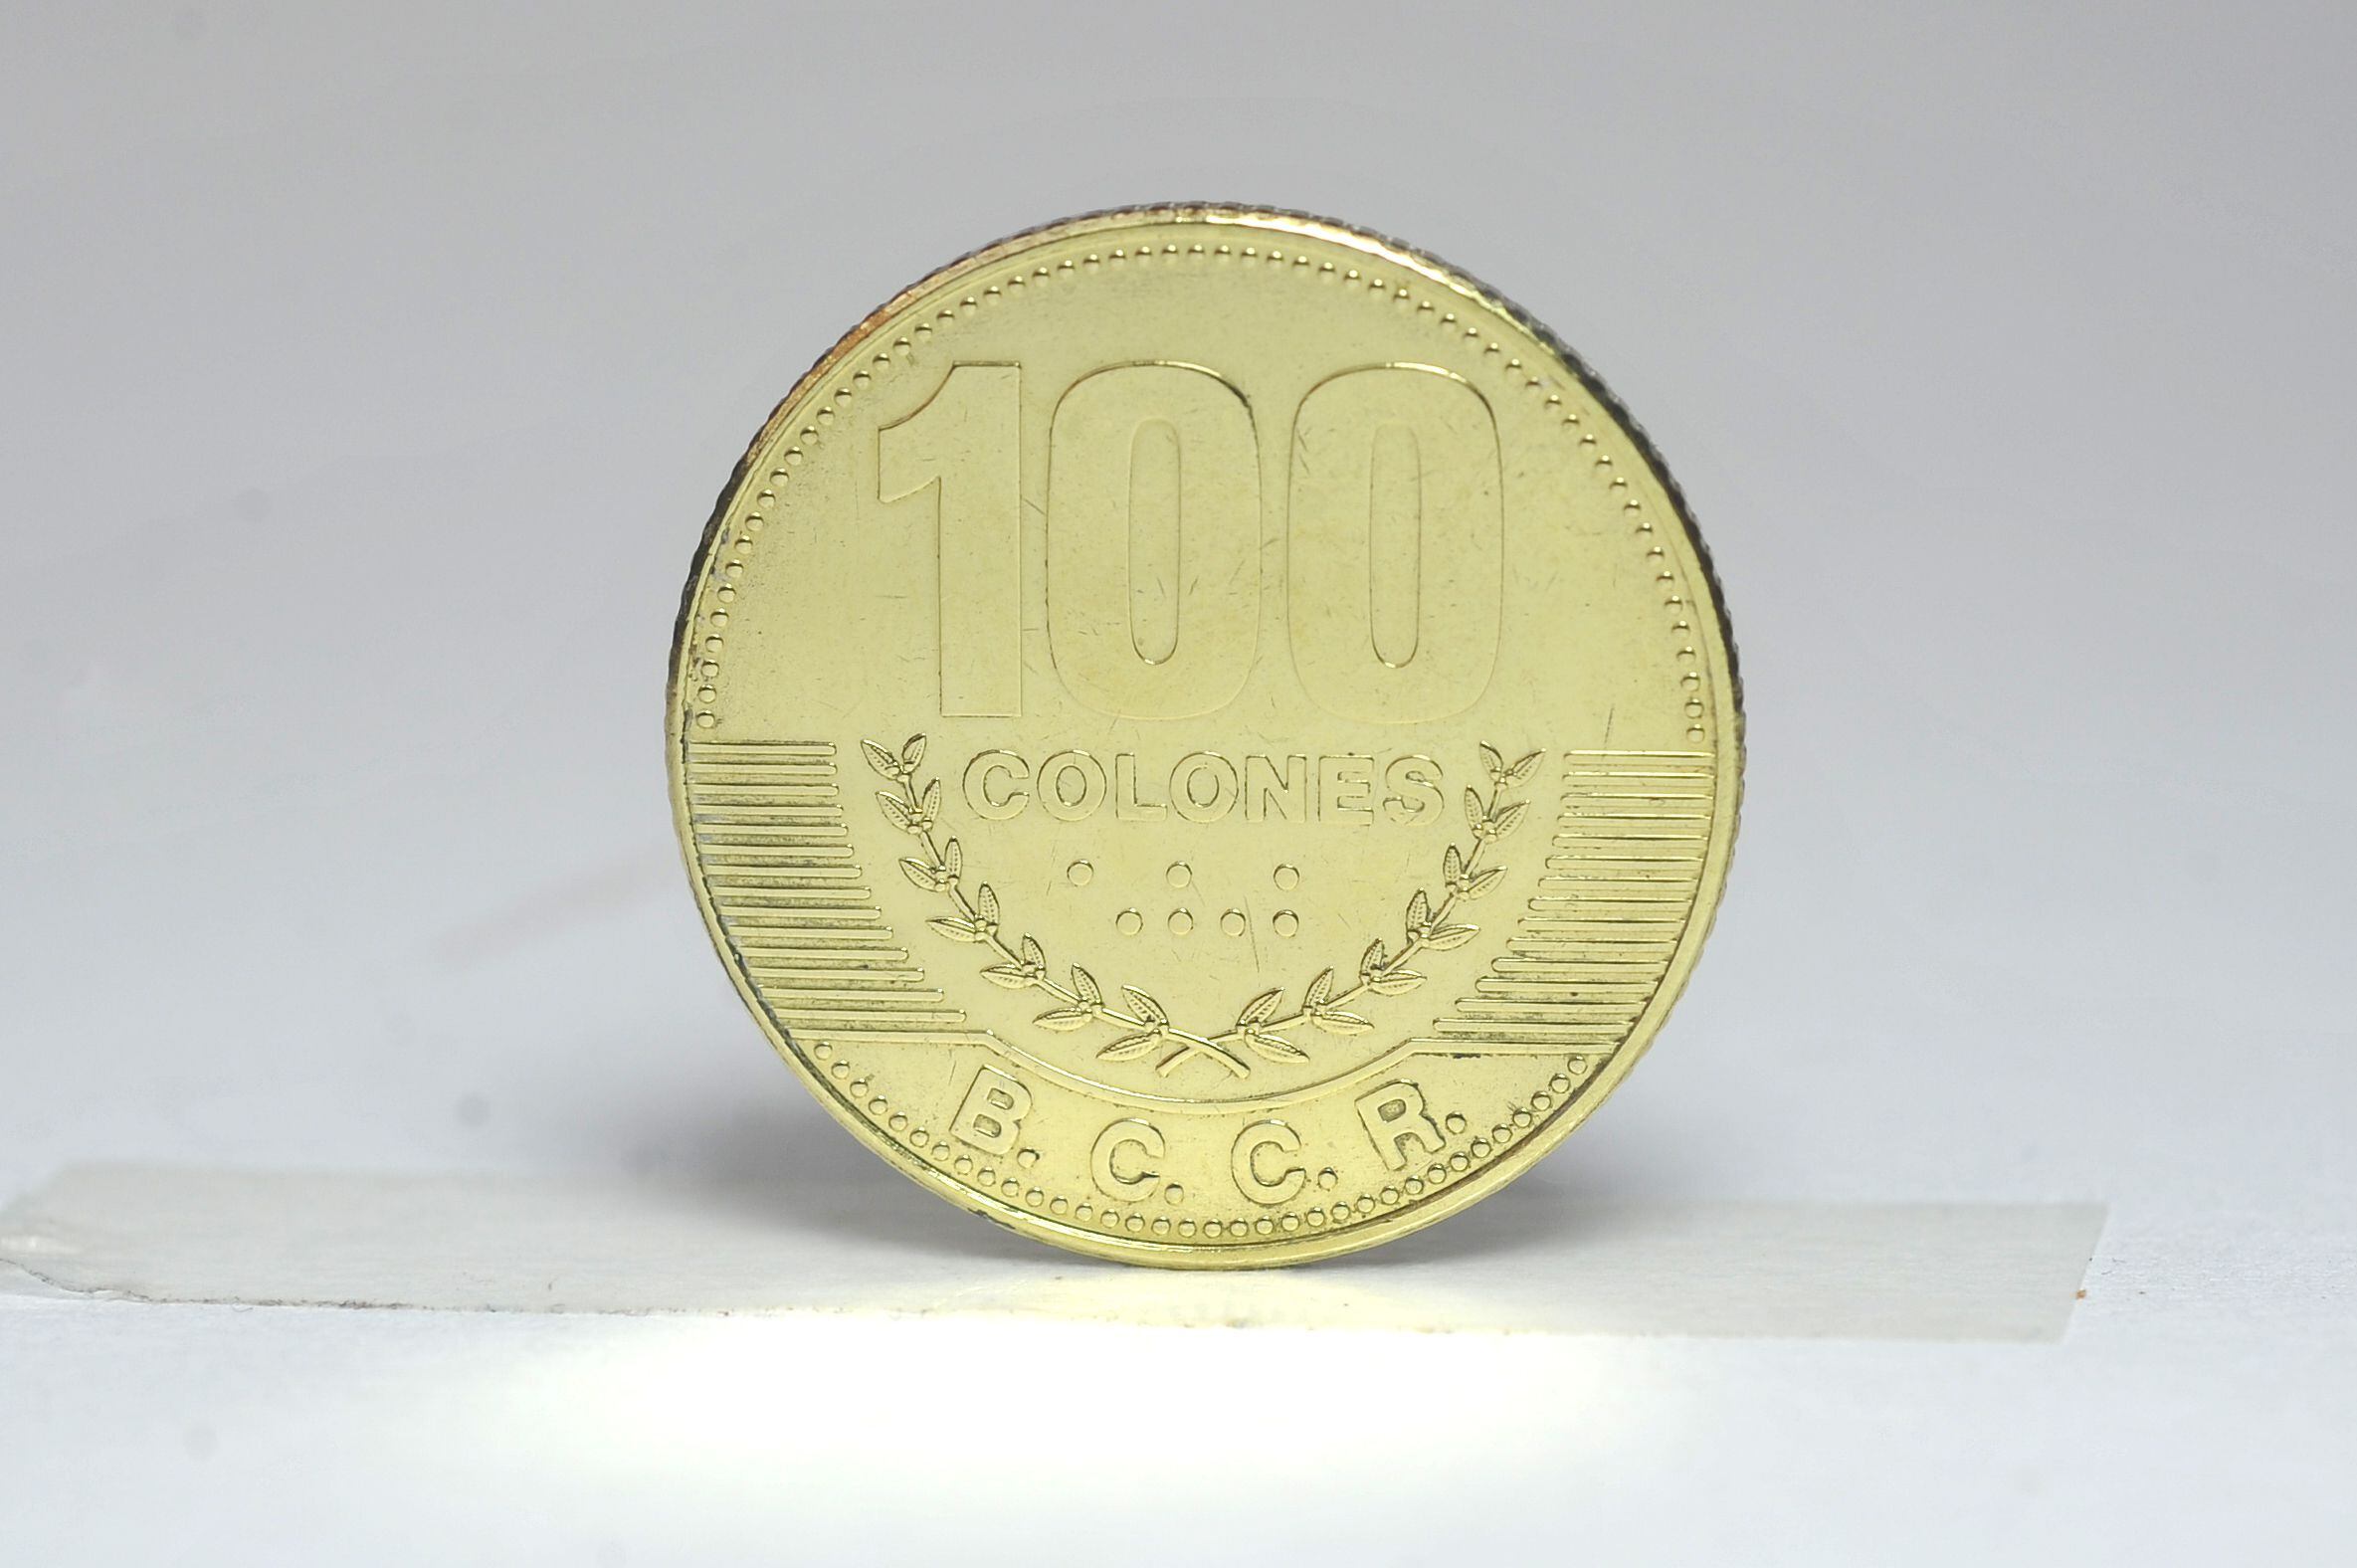 Las monedas de ¢10 y ¢100 escasean en la economía tica por las dificultades para fabricar nuevas a raíz de la pandemia, guerra en Ucrania y crisis de los contenedores, según el Banco Central.